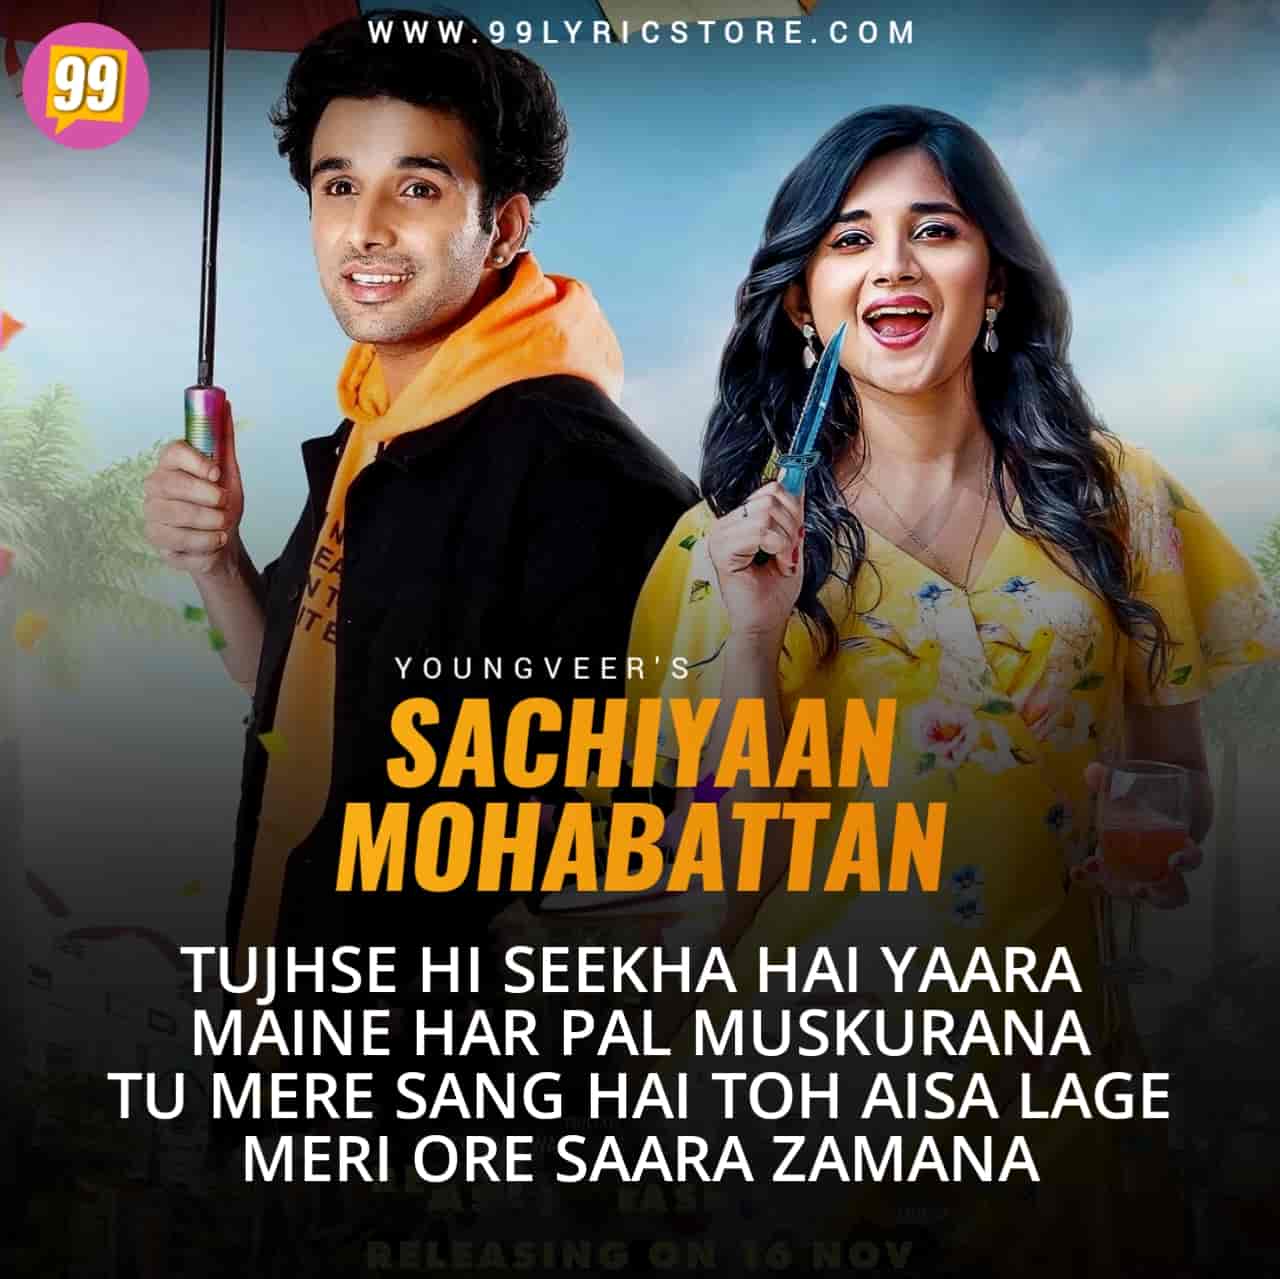 New Punjabi Song Sachiyaan Mohobattan Lyrics Image Features Youngveer and Kanika Maan